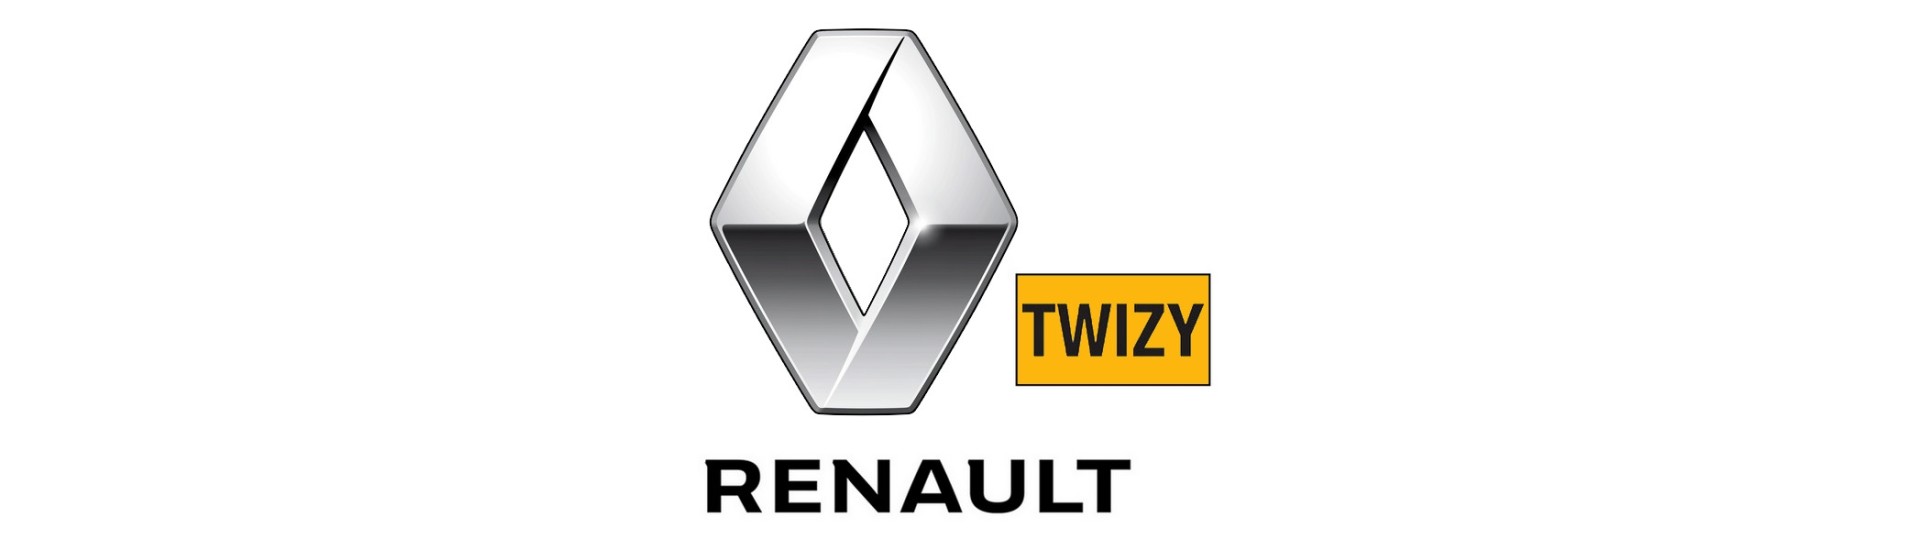 Elektrisk tillverkare till bästa pris utan tillstånd Renault Twizy